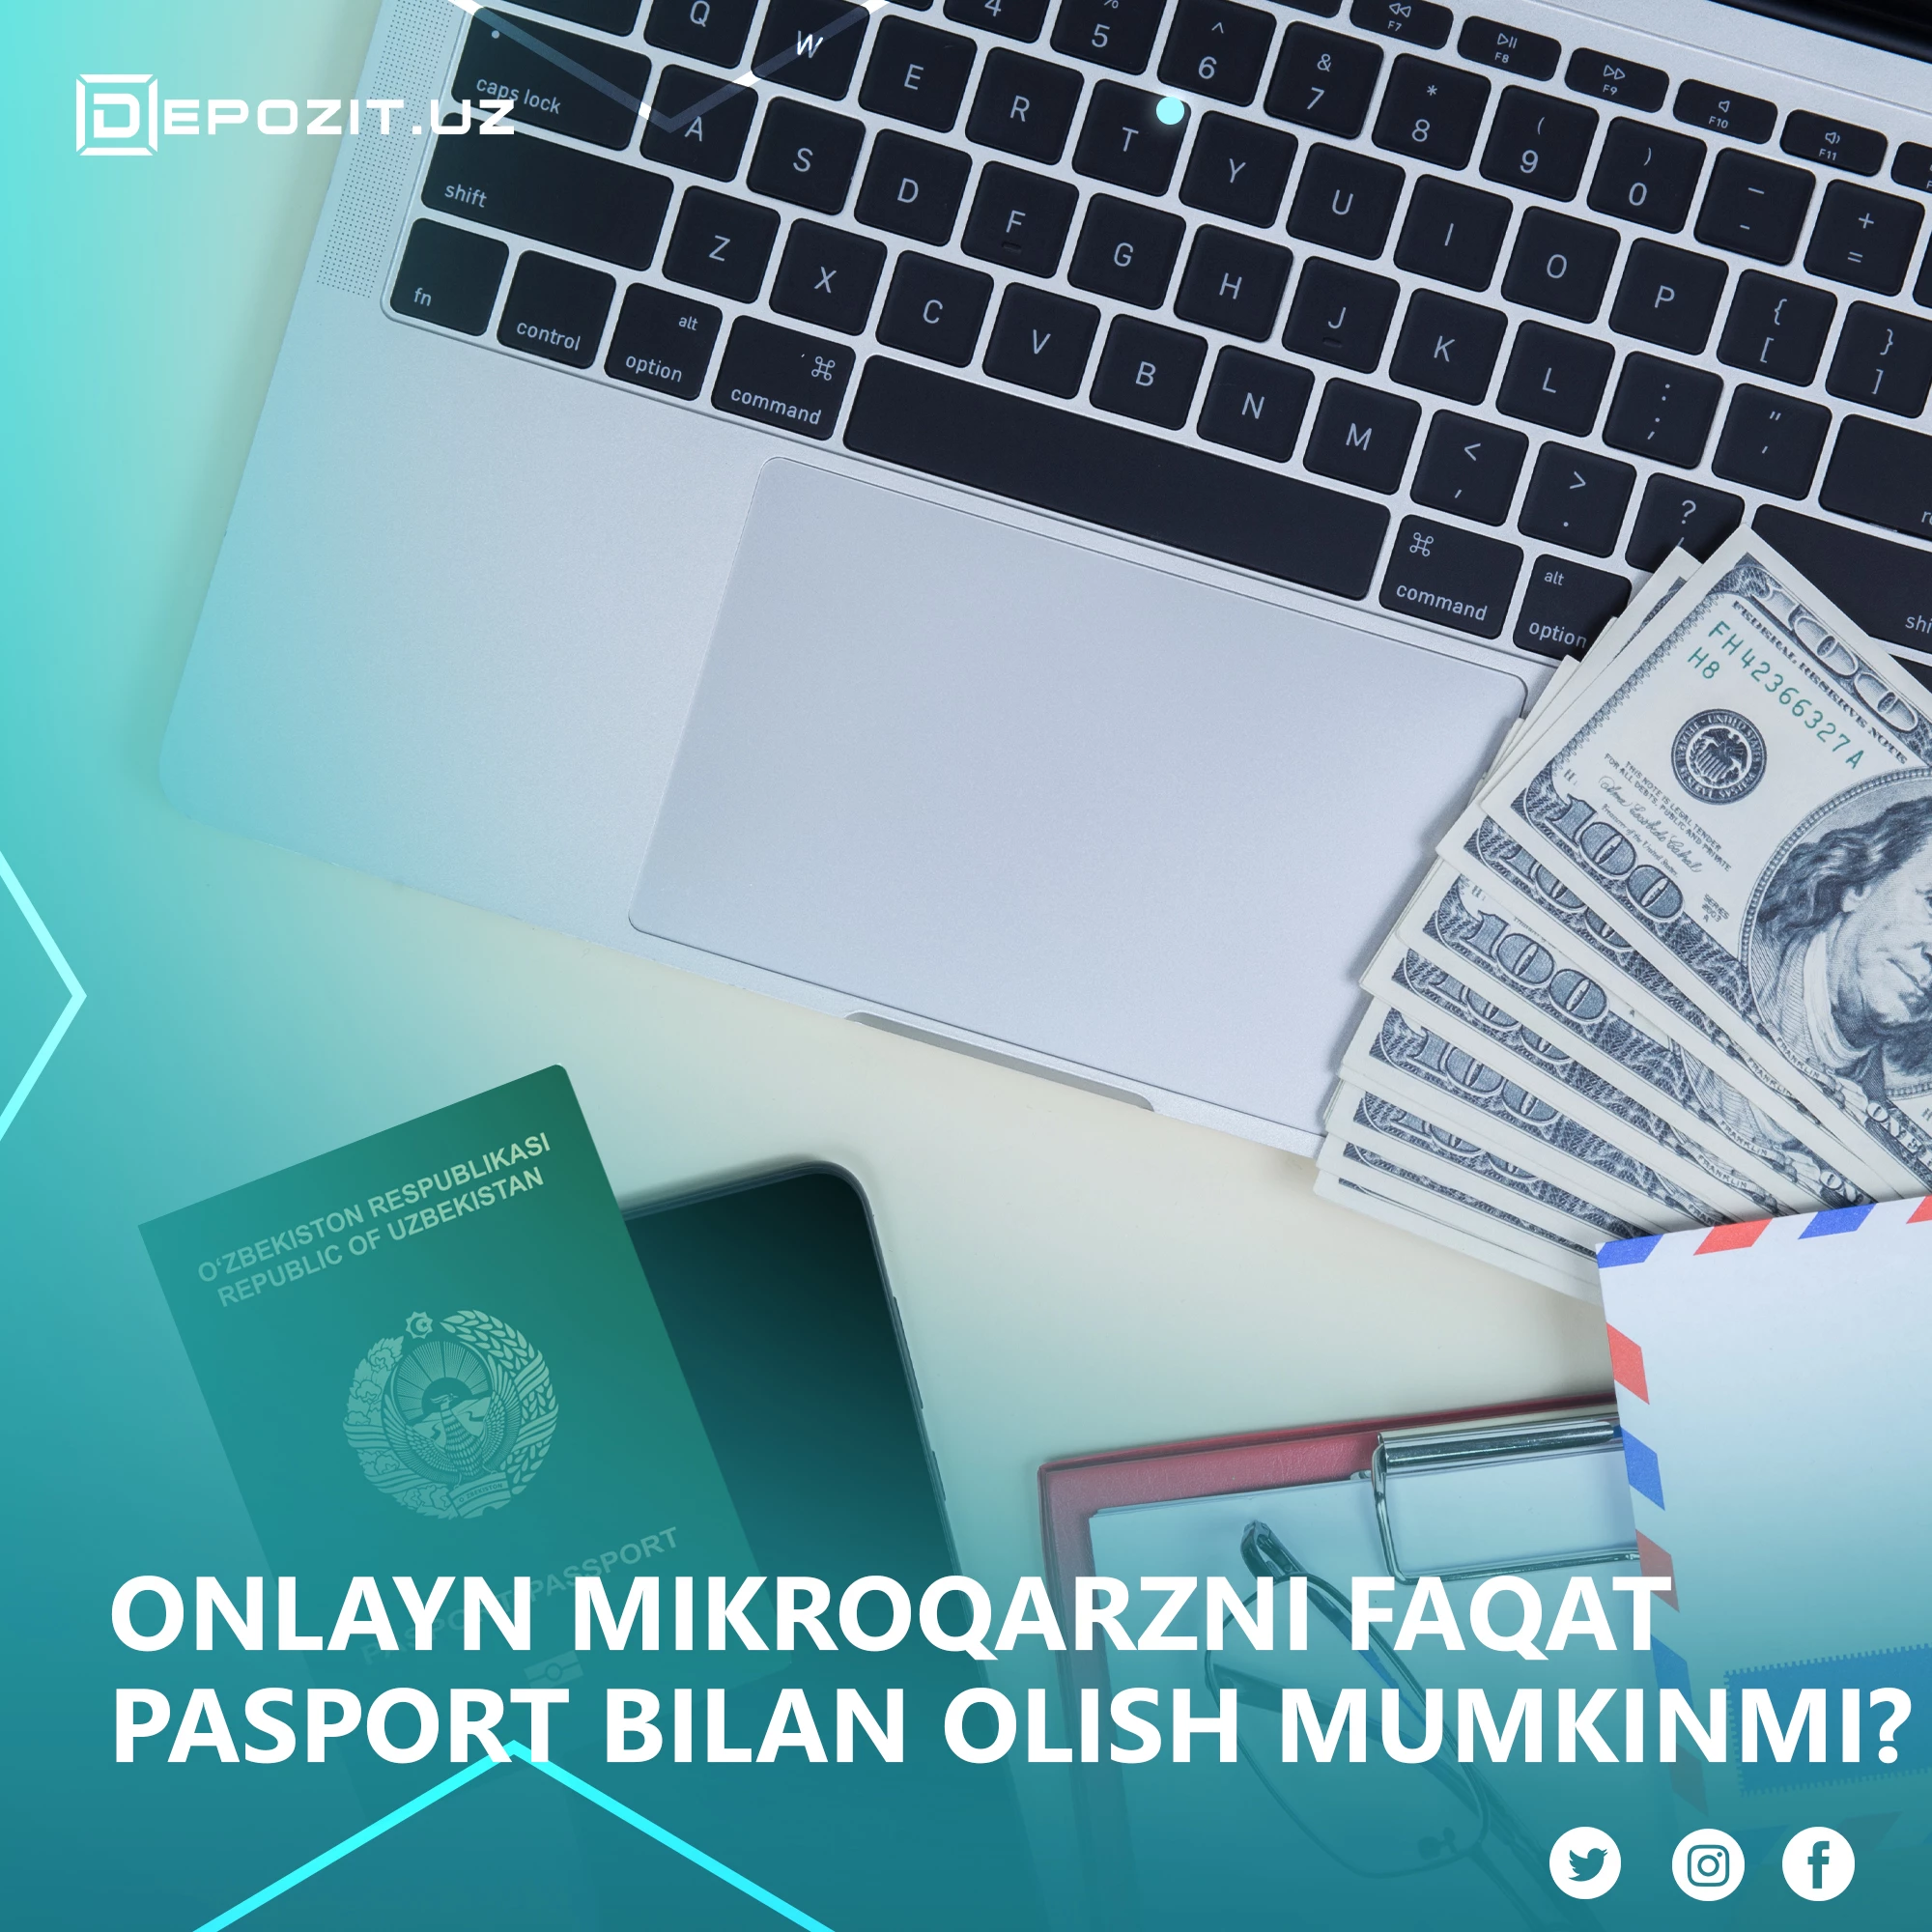 Можно ли получить онлайн-микрозайм только по паспорту?